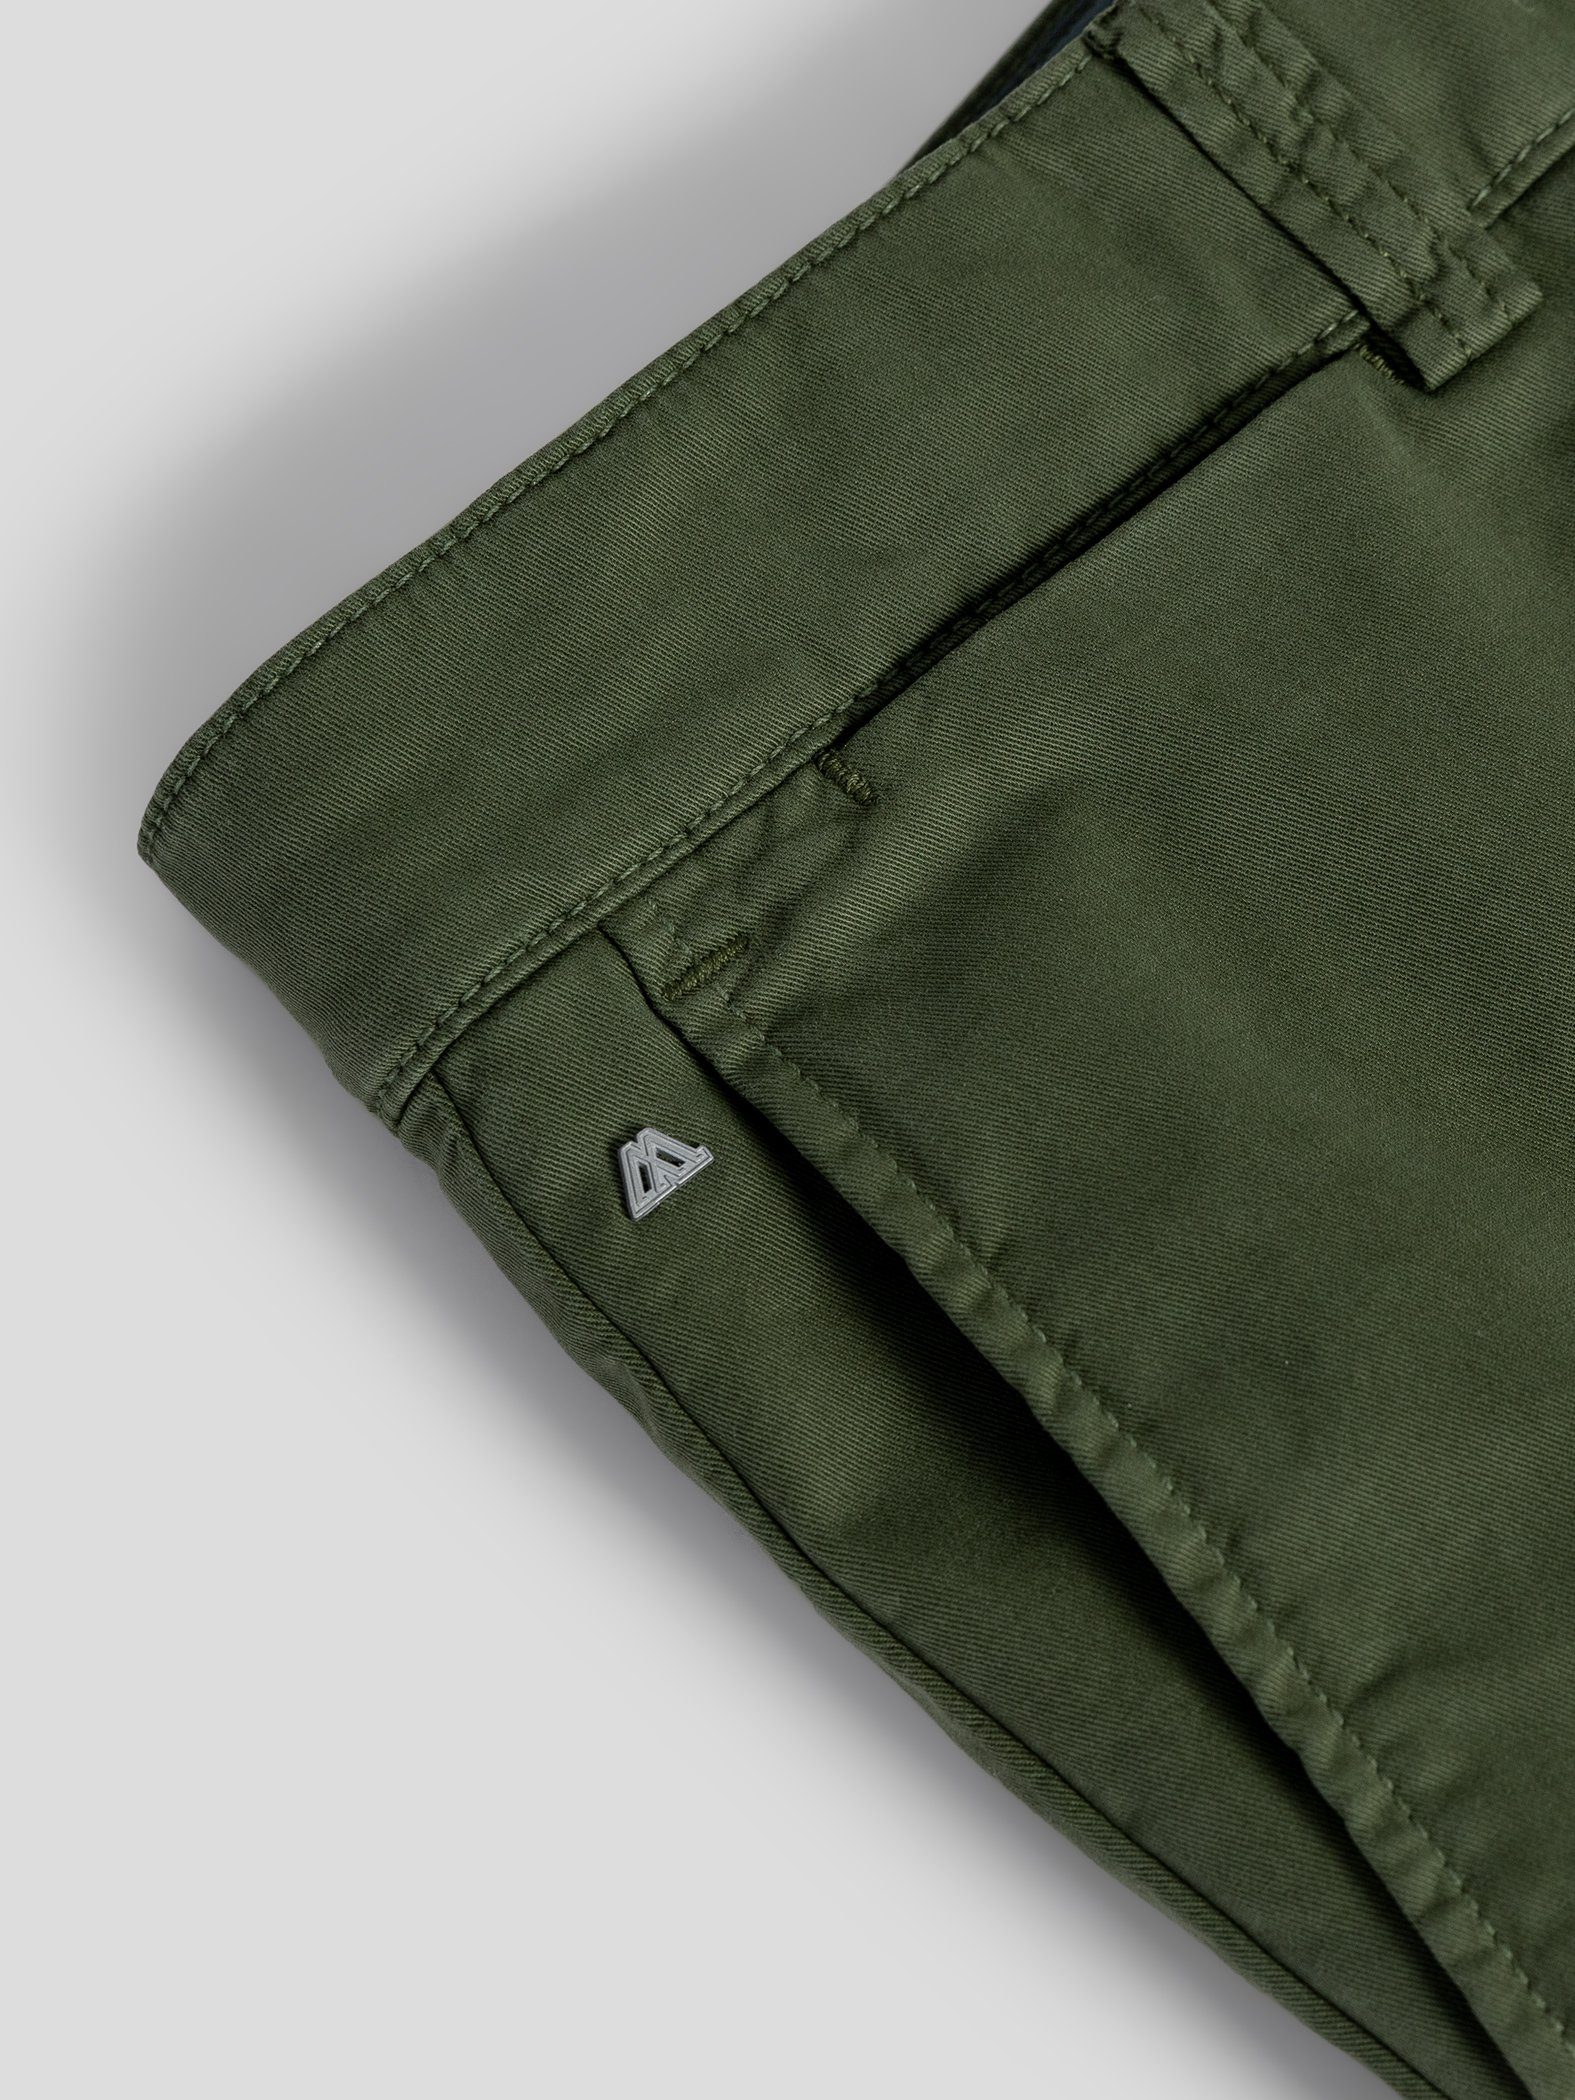 TwoMates Shorts Shorts mit Farbauswahl, elastischem Bund, GOTS-zertifiziert Grün